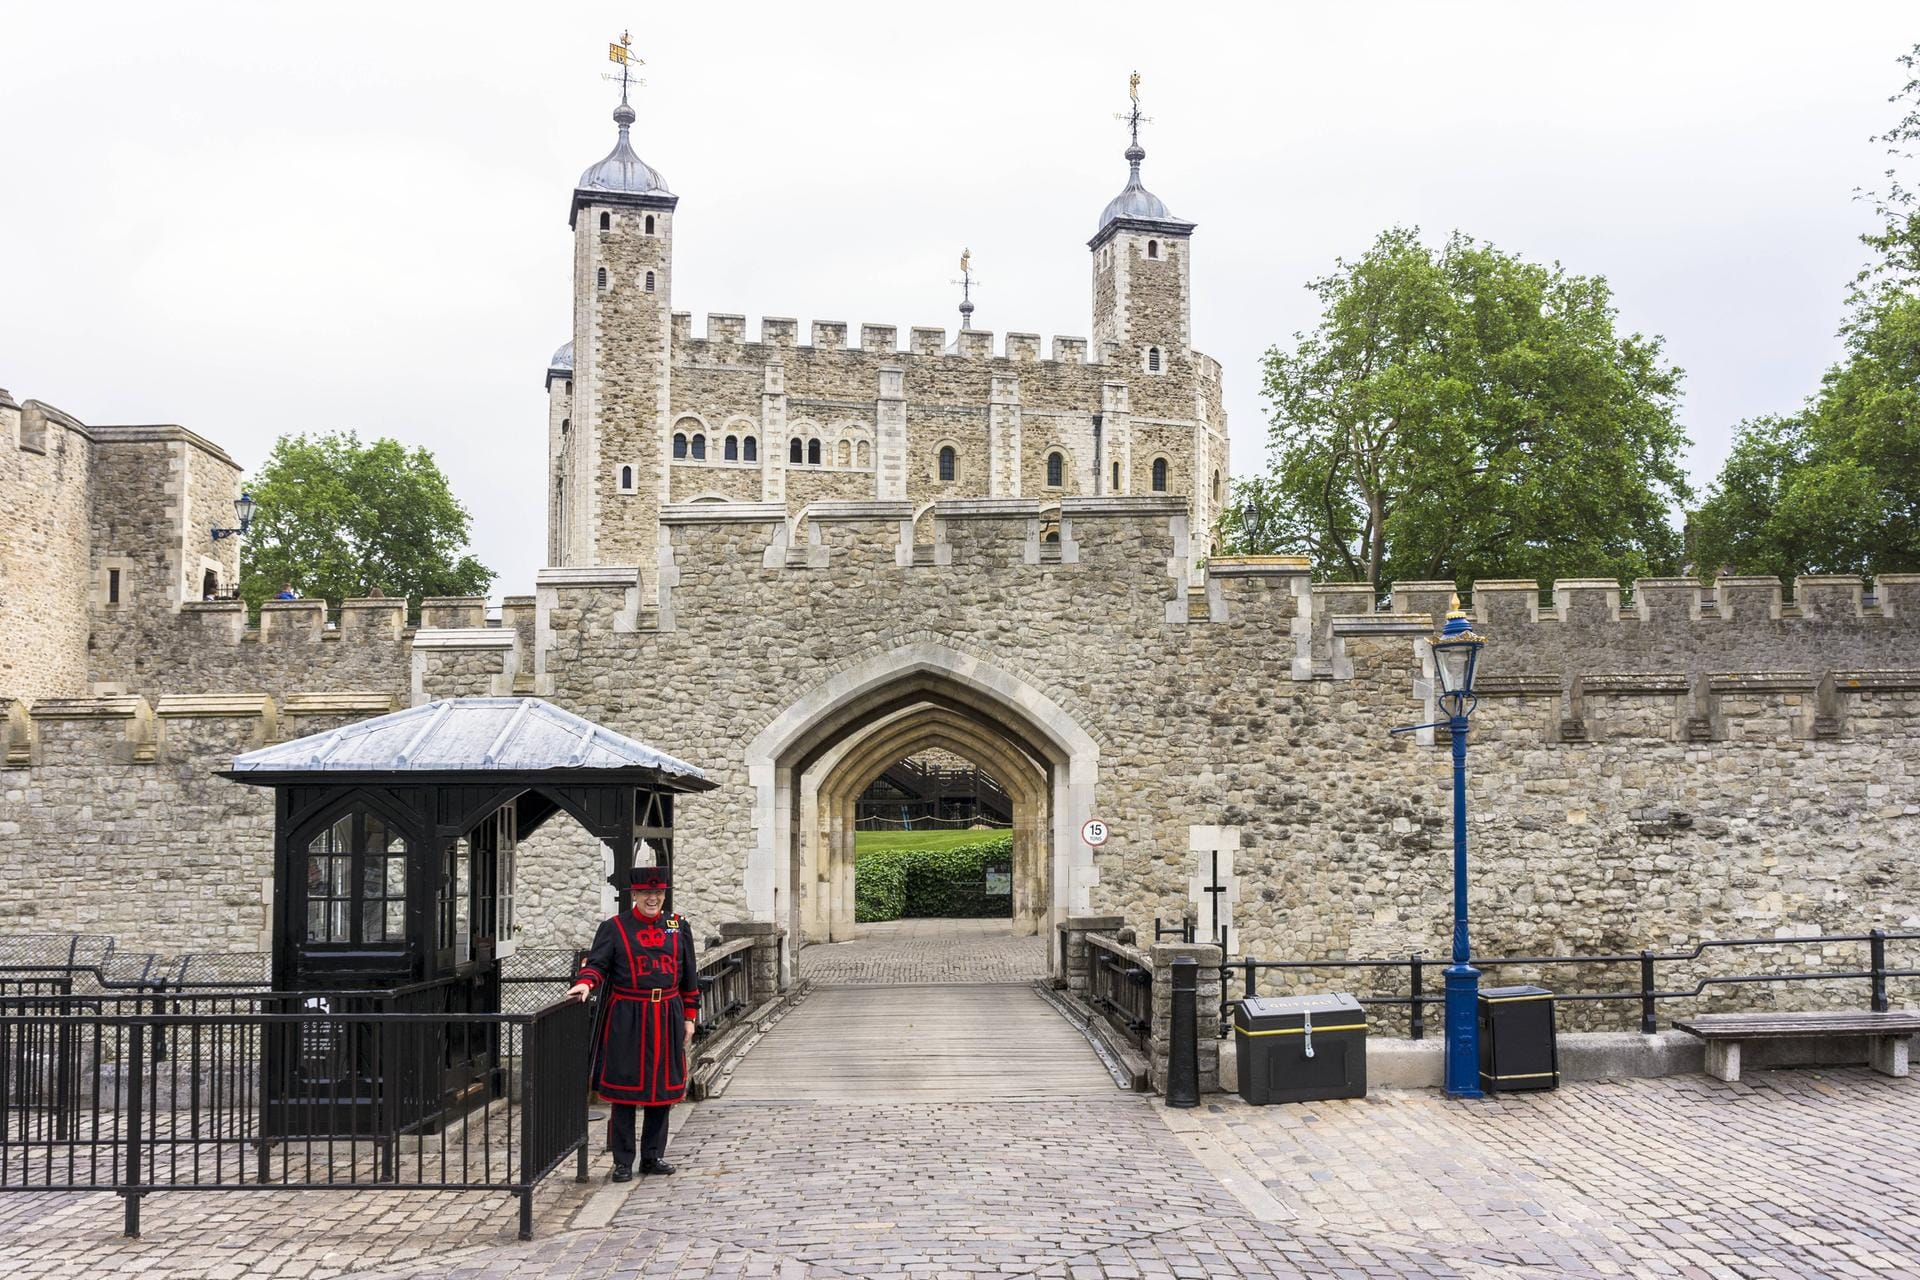 Der Tower of London ist ein berüchtigt-gefürchteter Kerker, dessen Geschichte bis ins Jahr 1101 reicht.